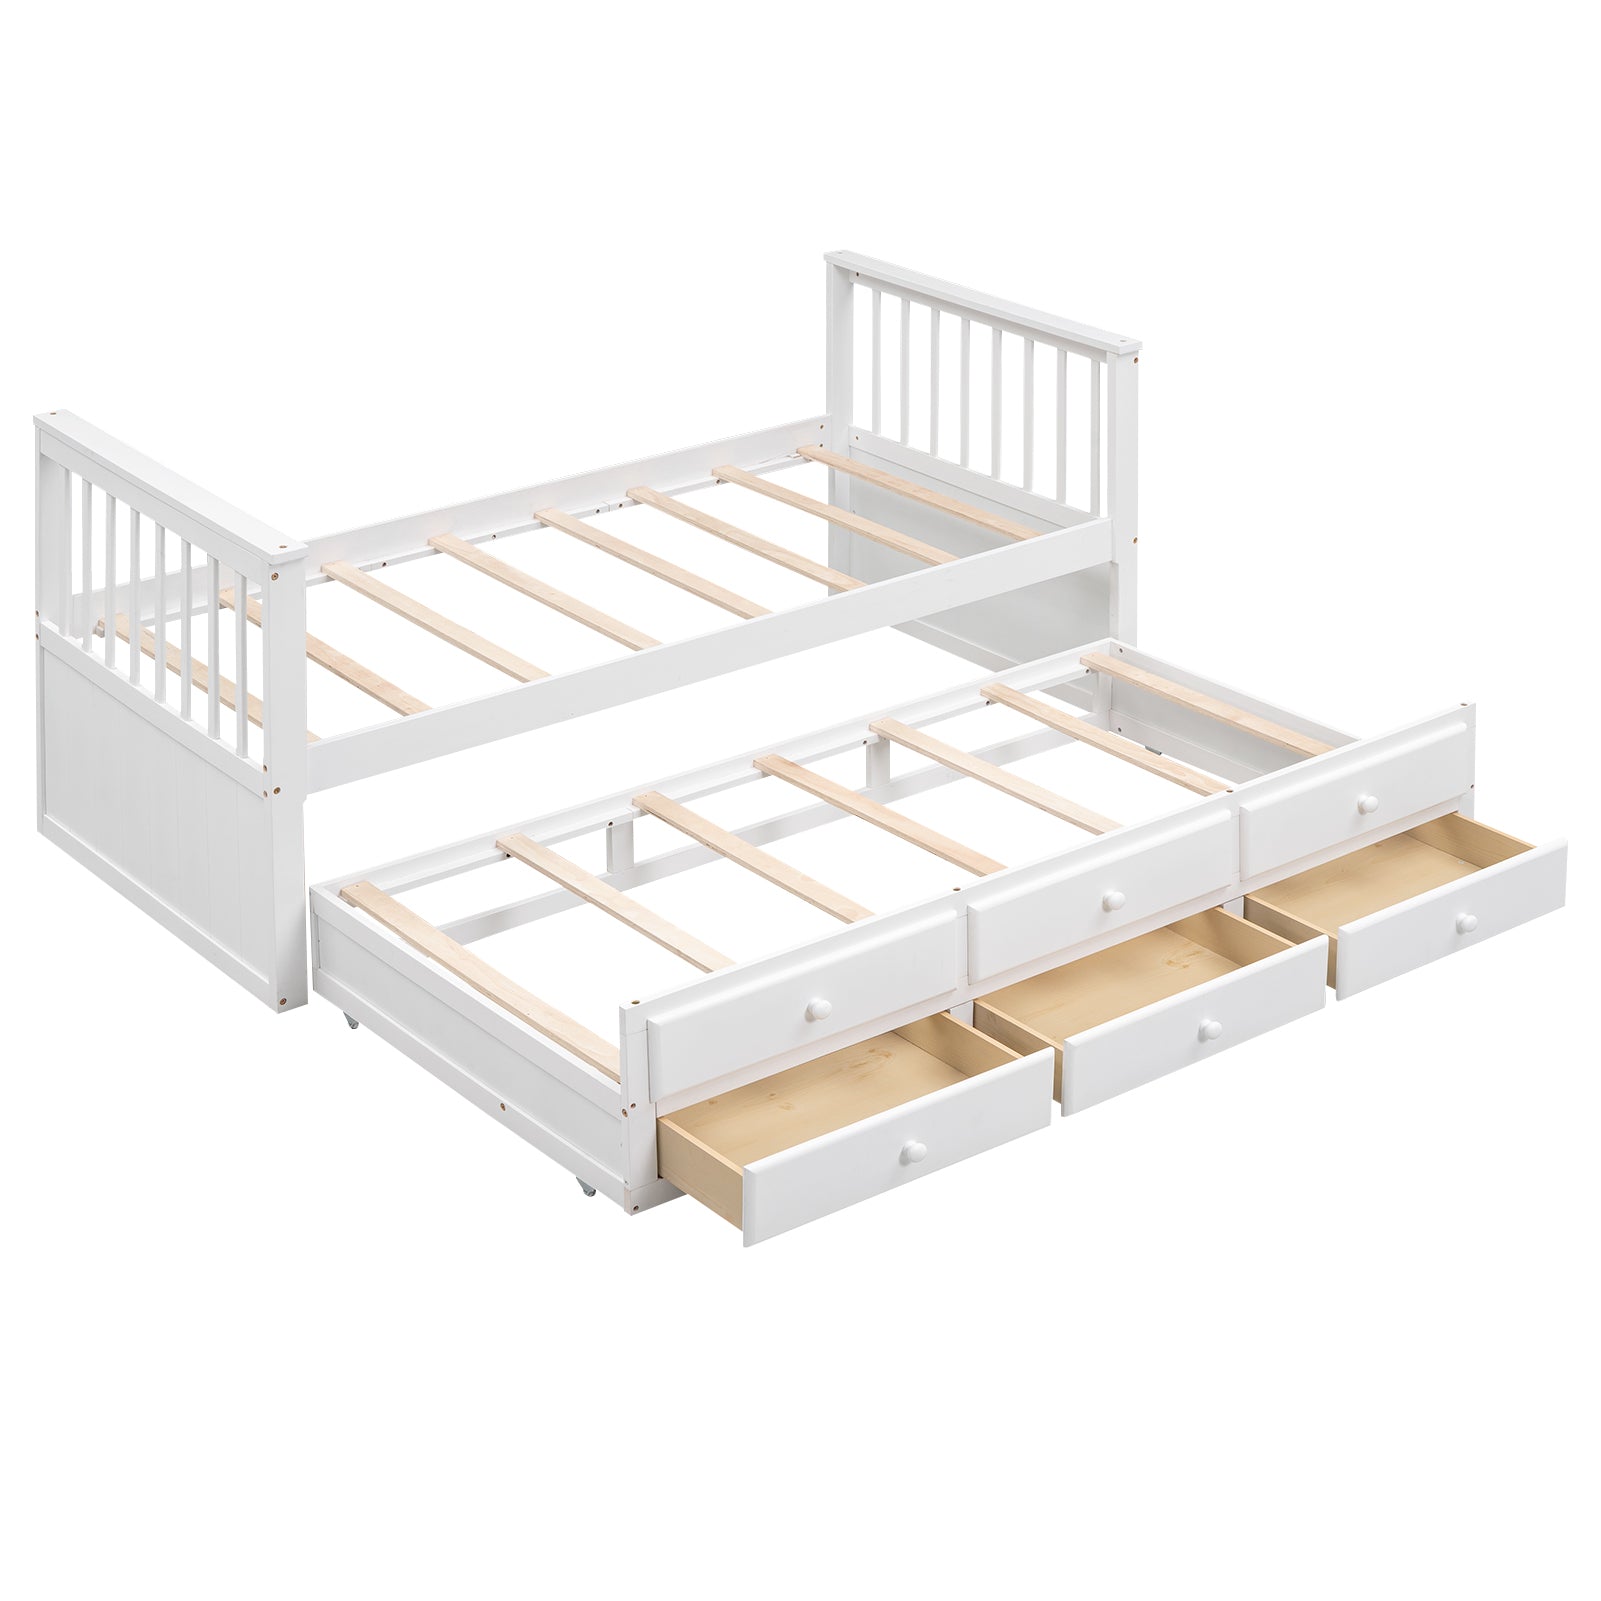 okwish Kinderbett 90x200 cm, klassisches Tagesbett, Massivholzbett mit Ausziehbett, 3 Schubladen zur Aufbewahrung, weiß